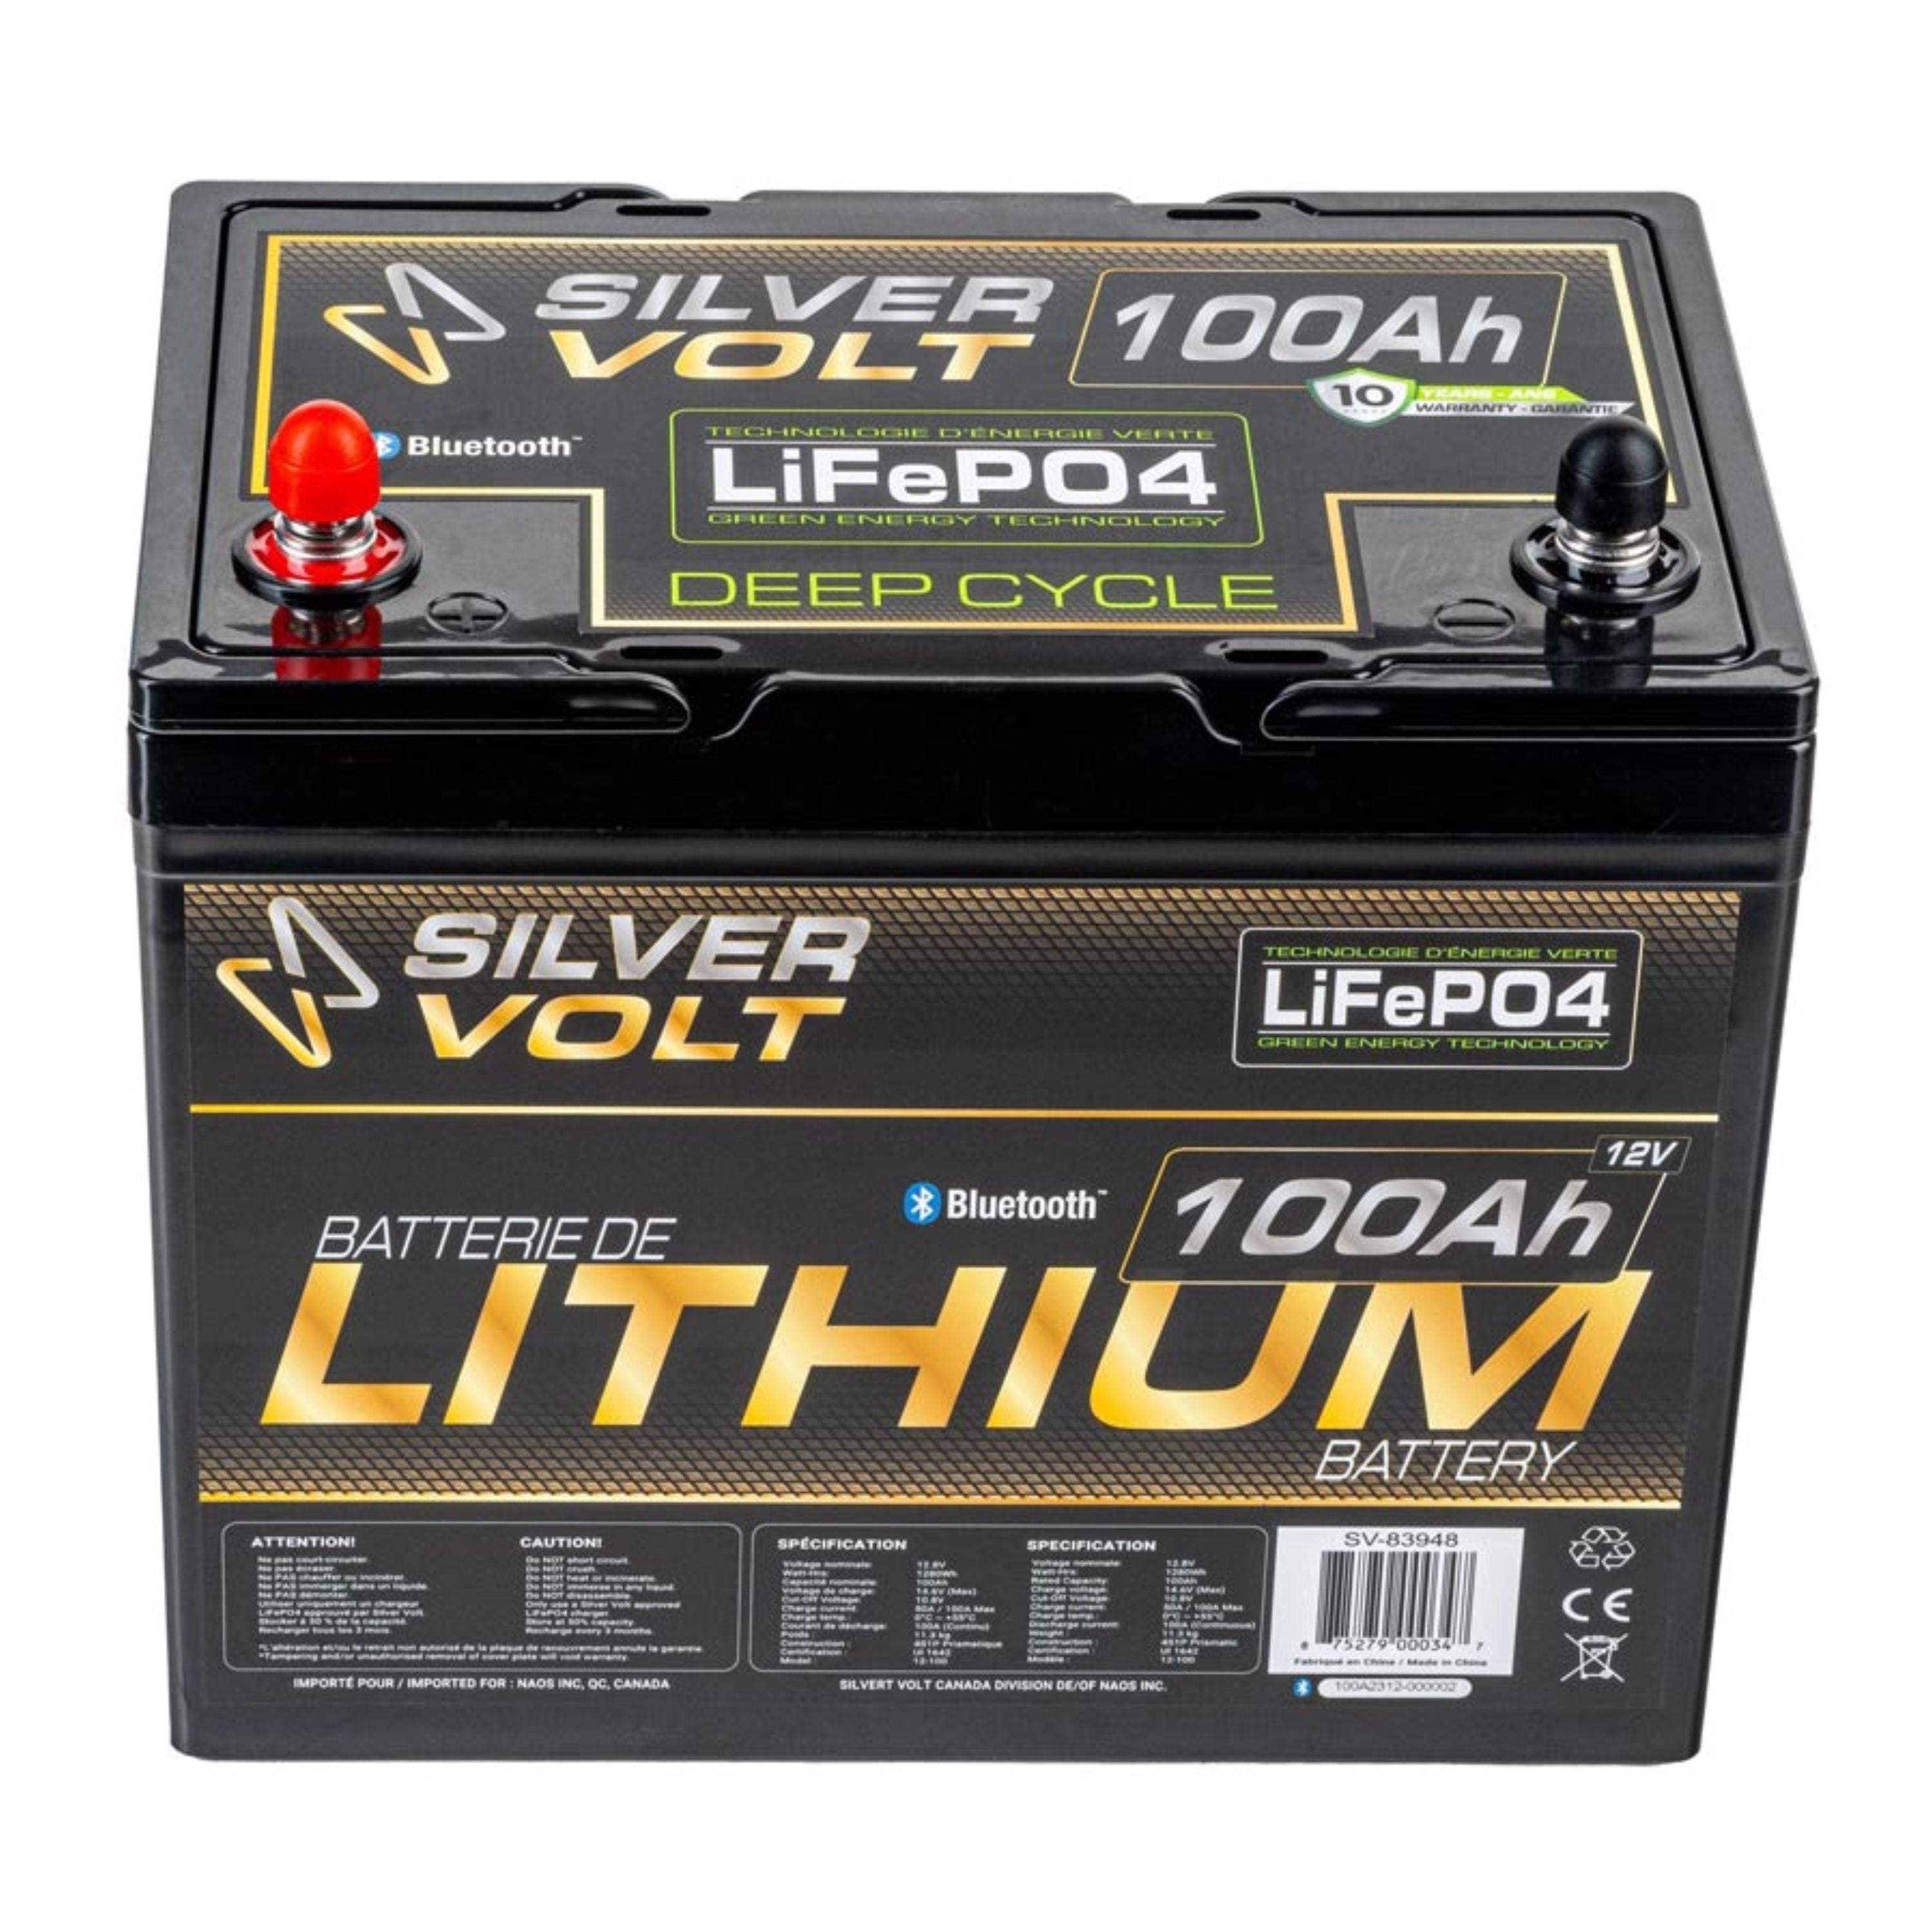 Batterie au lithium rechargeable "LiFePO4" - 100 A